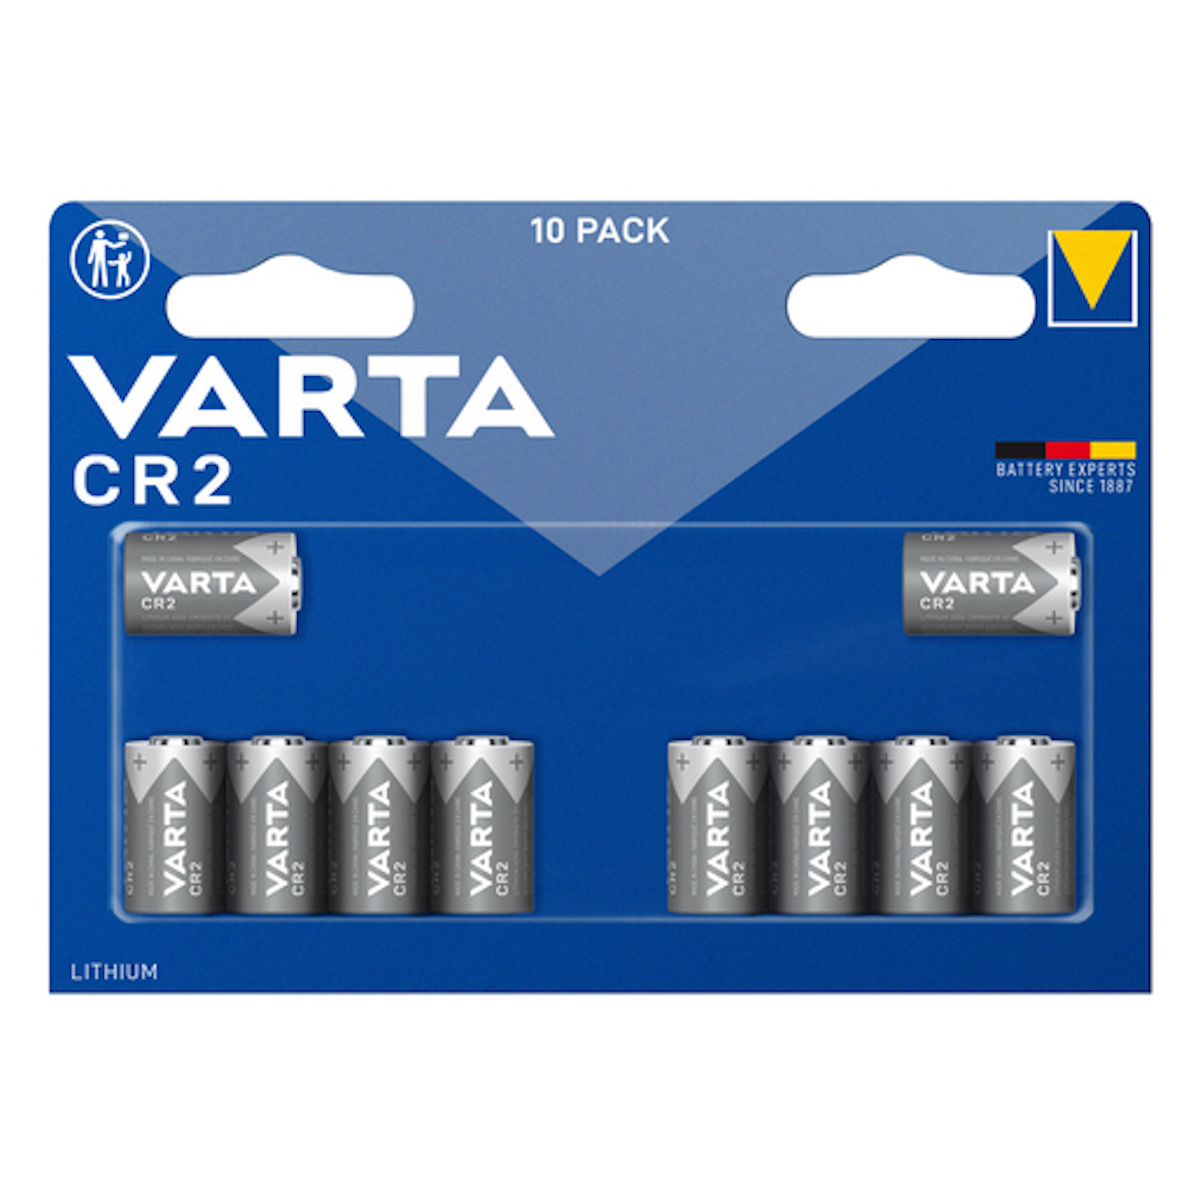 Varta Lithium CR2 10er Megablister Batterien